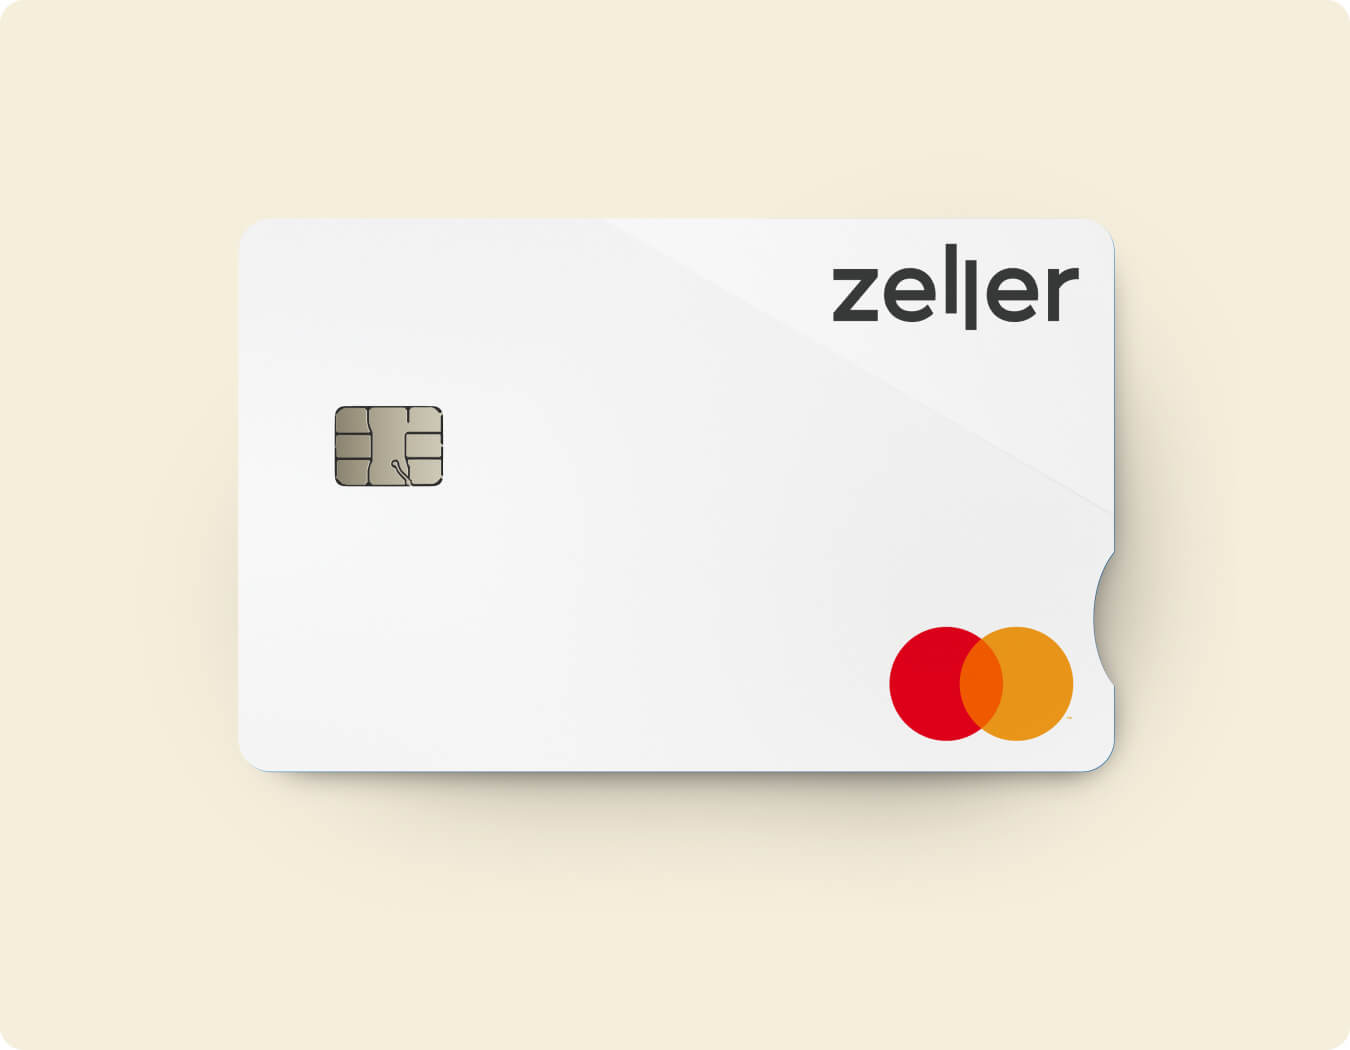 zeller-debit-card-white-yellow-card-1